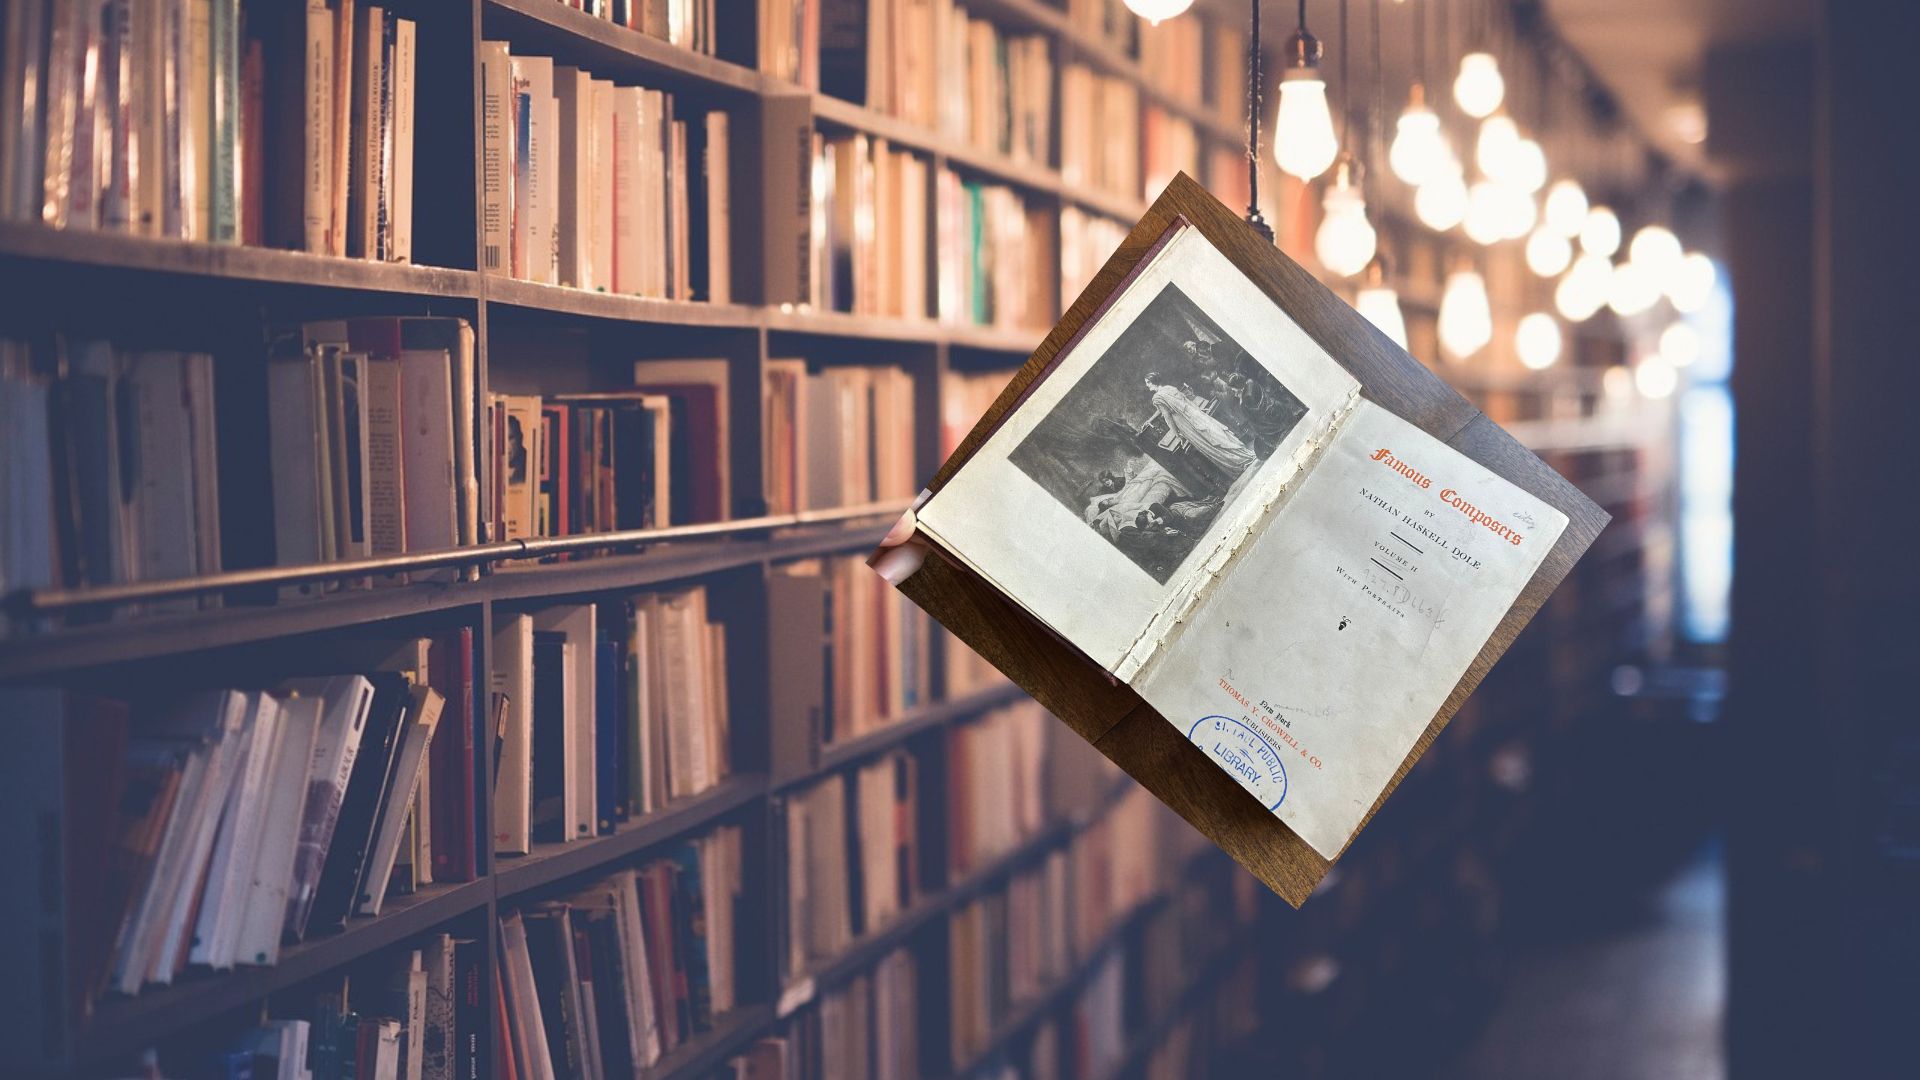 ΗΠΑ:  Βιβλίο επέστρεψε σε βιβλιοθήκη μετά από 100 χρόνια